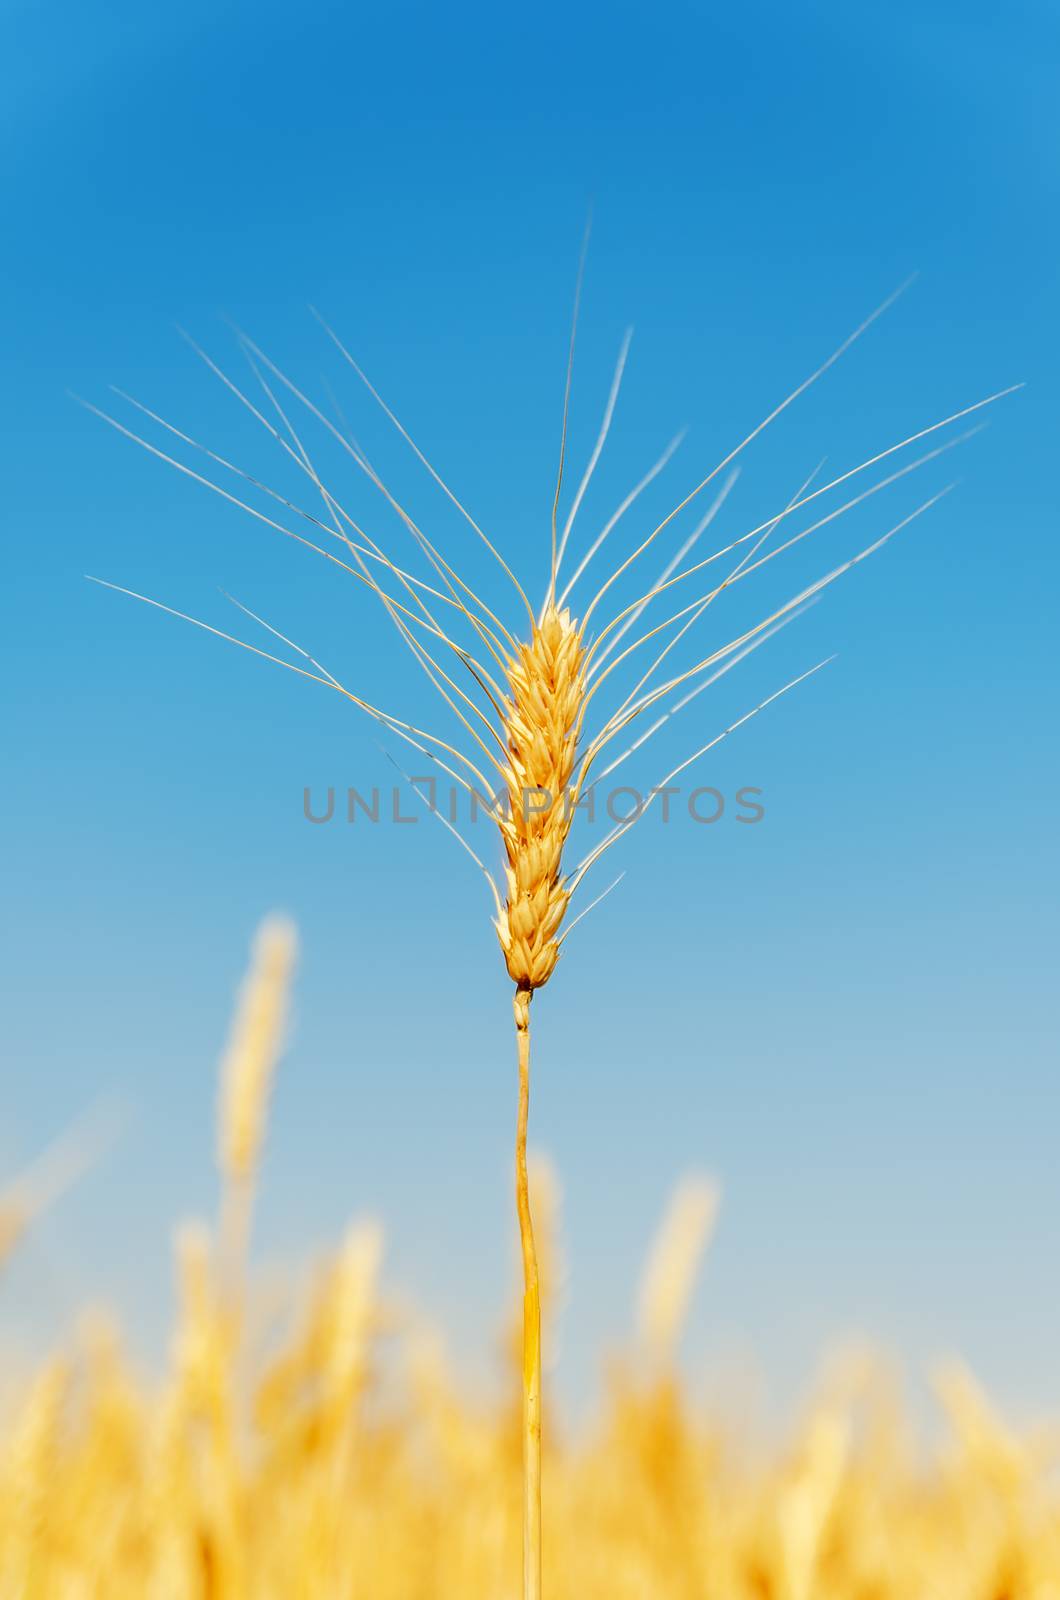 ripe harvest on field under blue sky by mycola